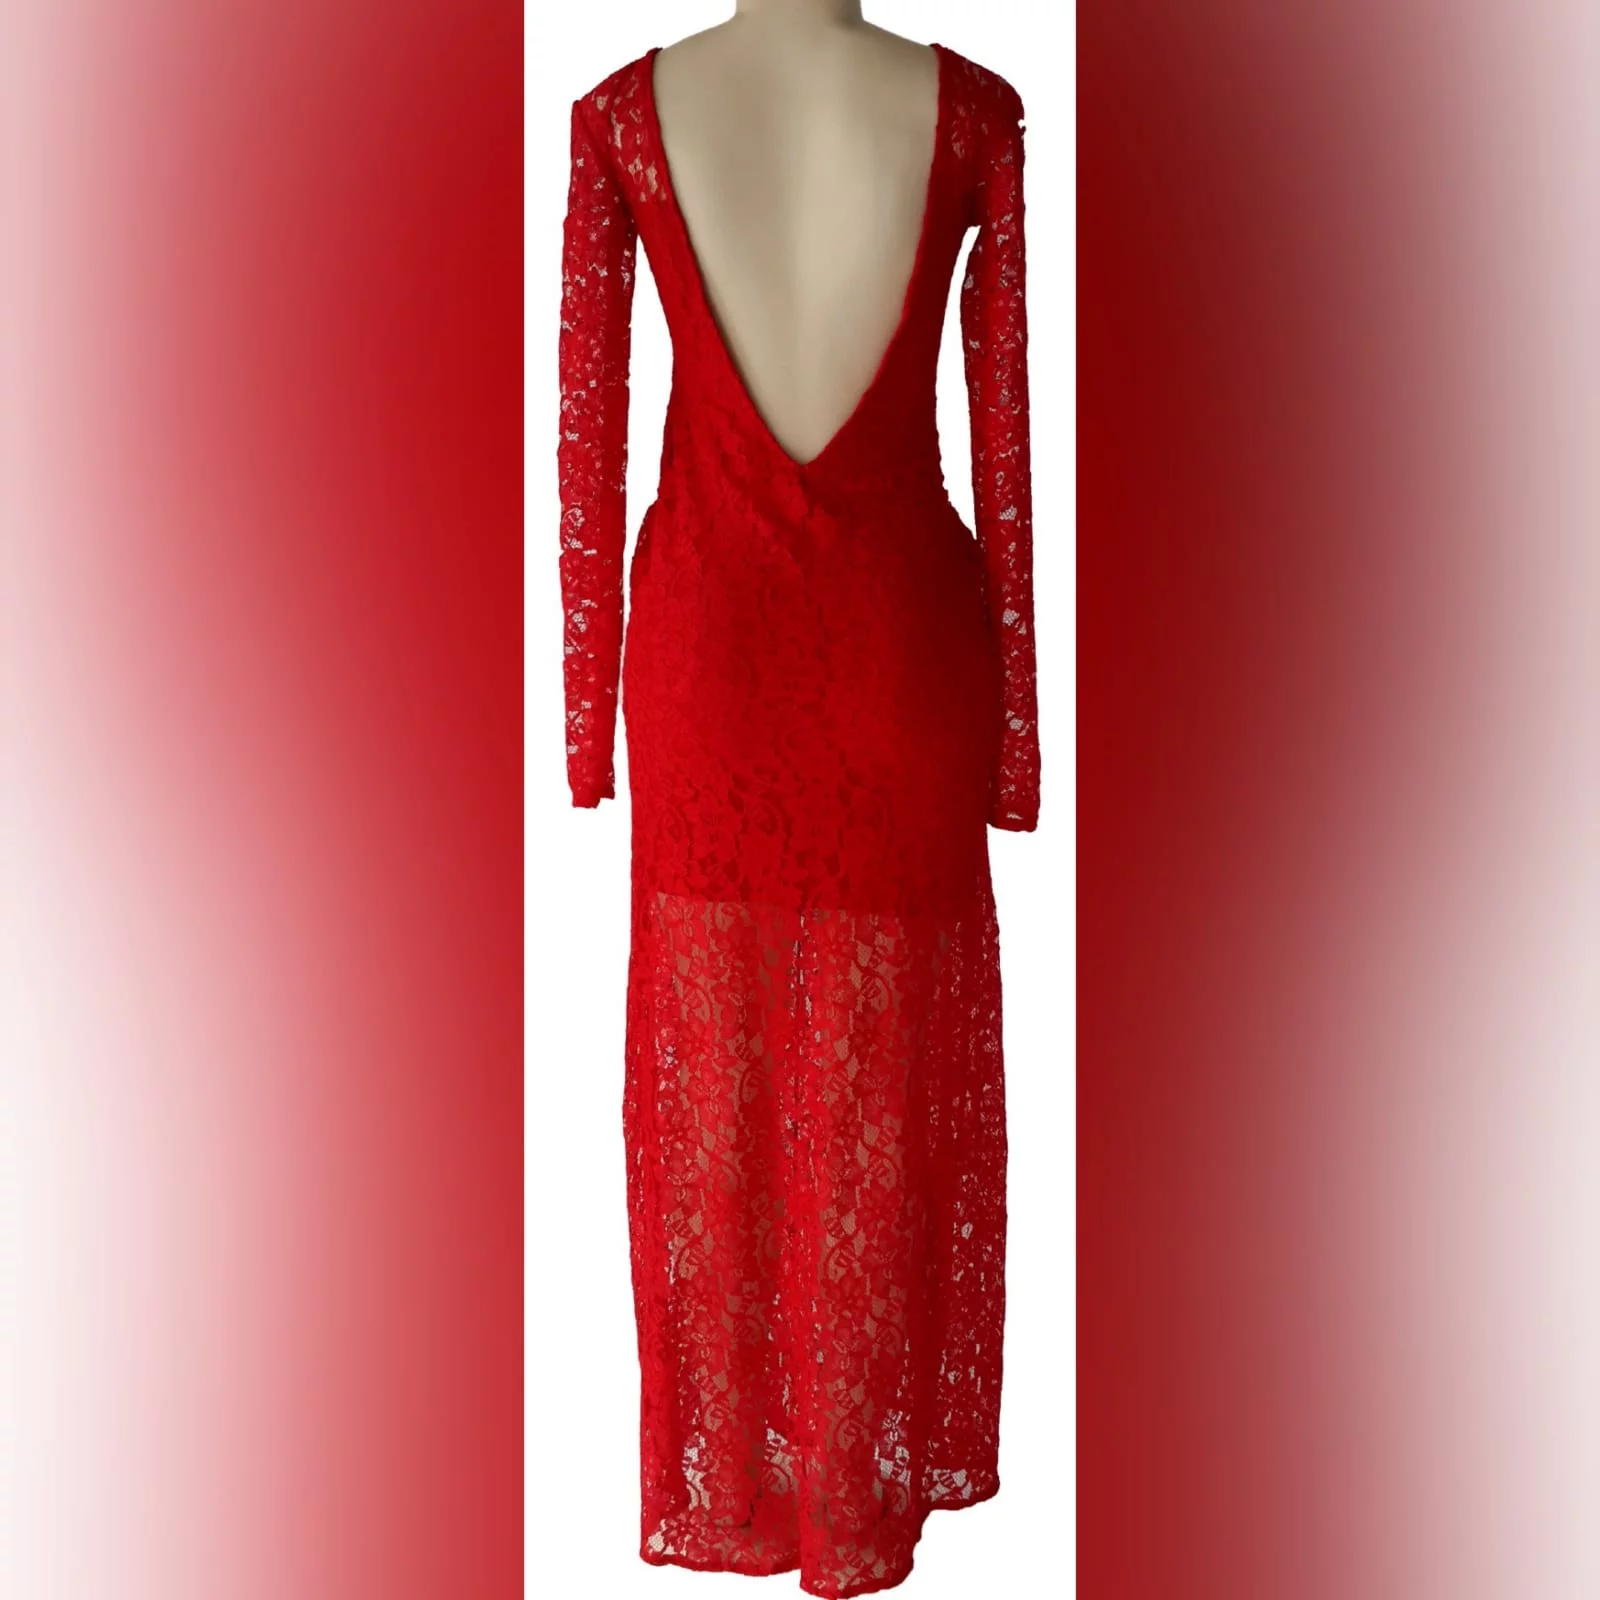 Vestido formal longo vermelho de renda 3 vestido formal longo vermelho de renda, com pernas, decote e mangas translucidas, com uma parte de trás em v aberto